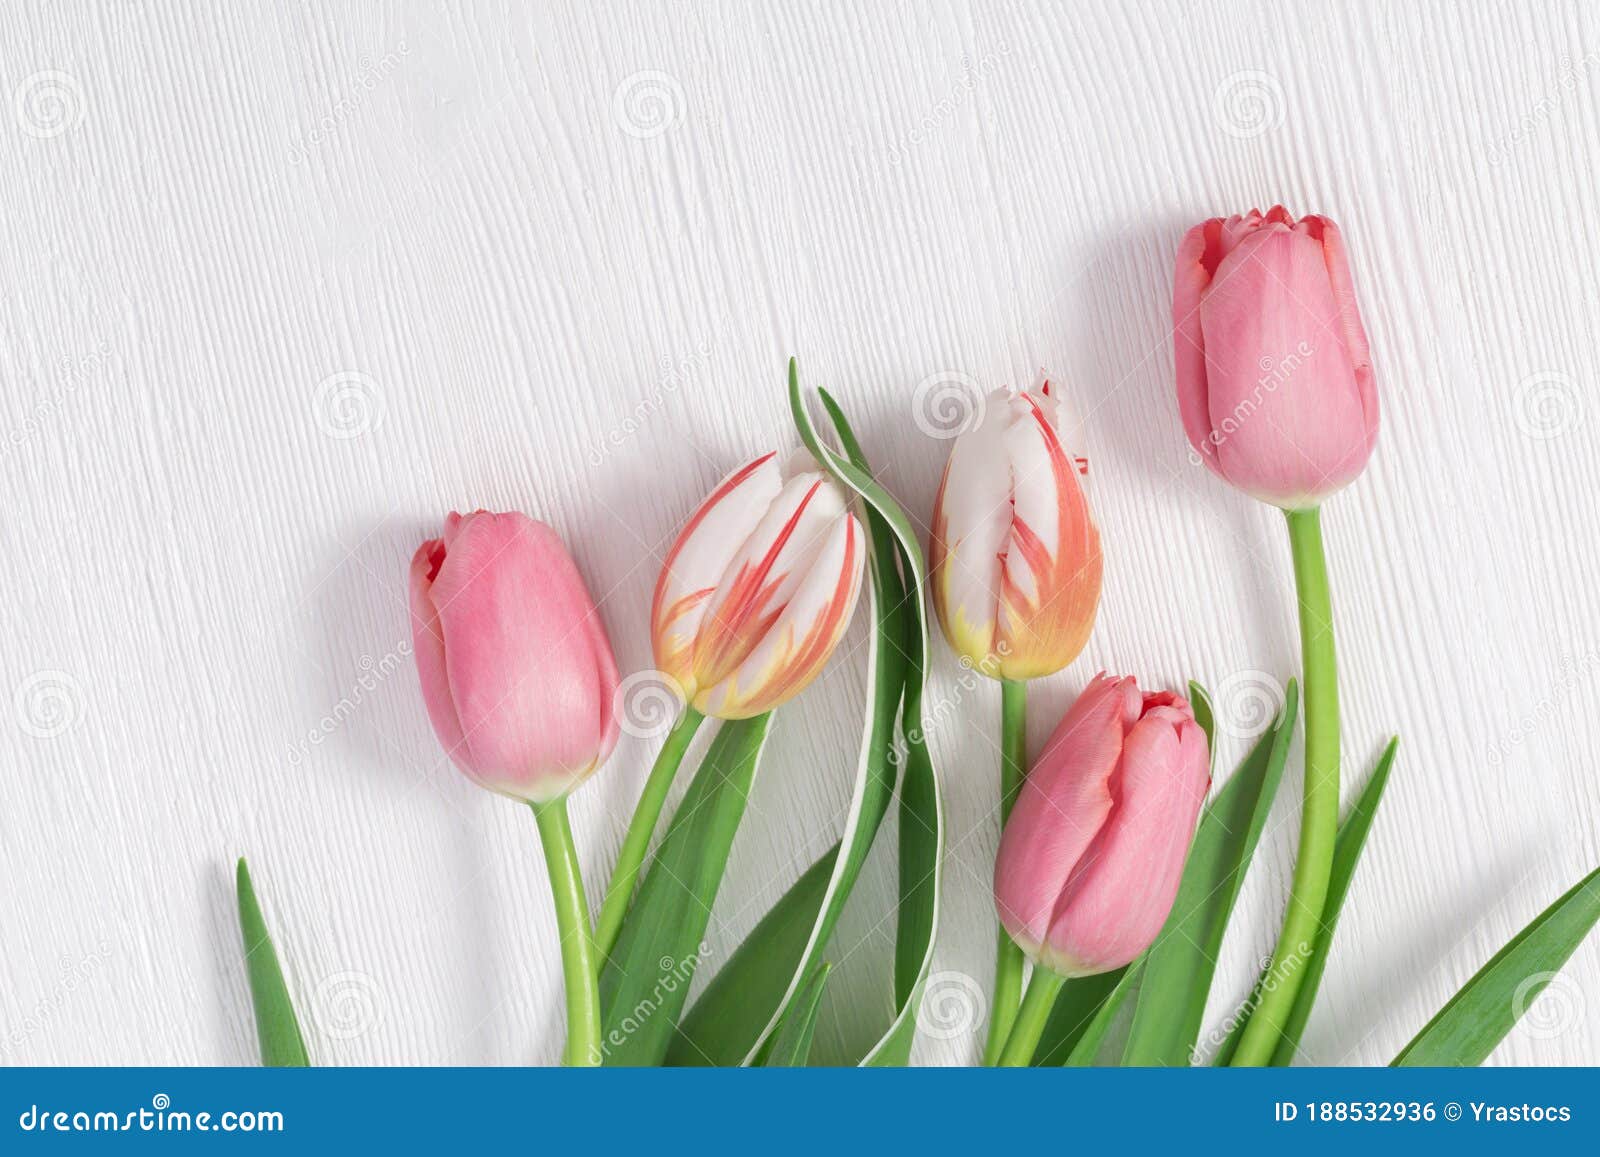 Flores Delicadas De Primavera Ramo De Colores Pastel De Tulipanes Blancos Y  Rosas Sobre Mesa De Madera Foto de archivo - Imagen de copia, romance:  188532936